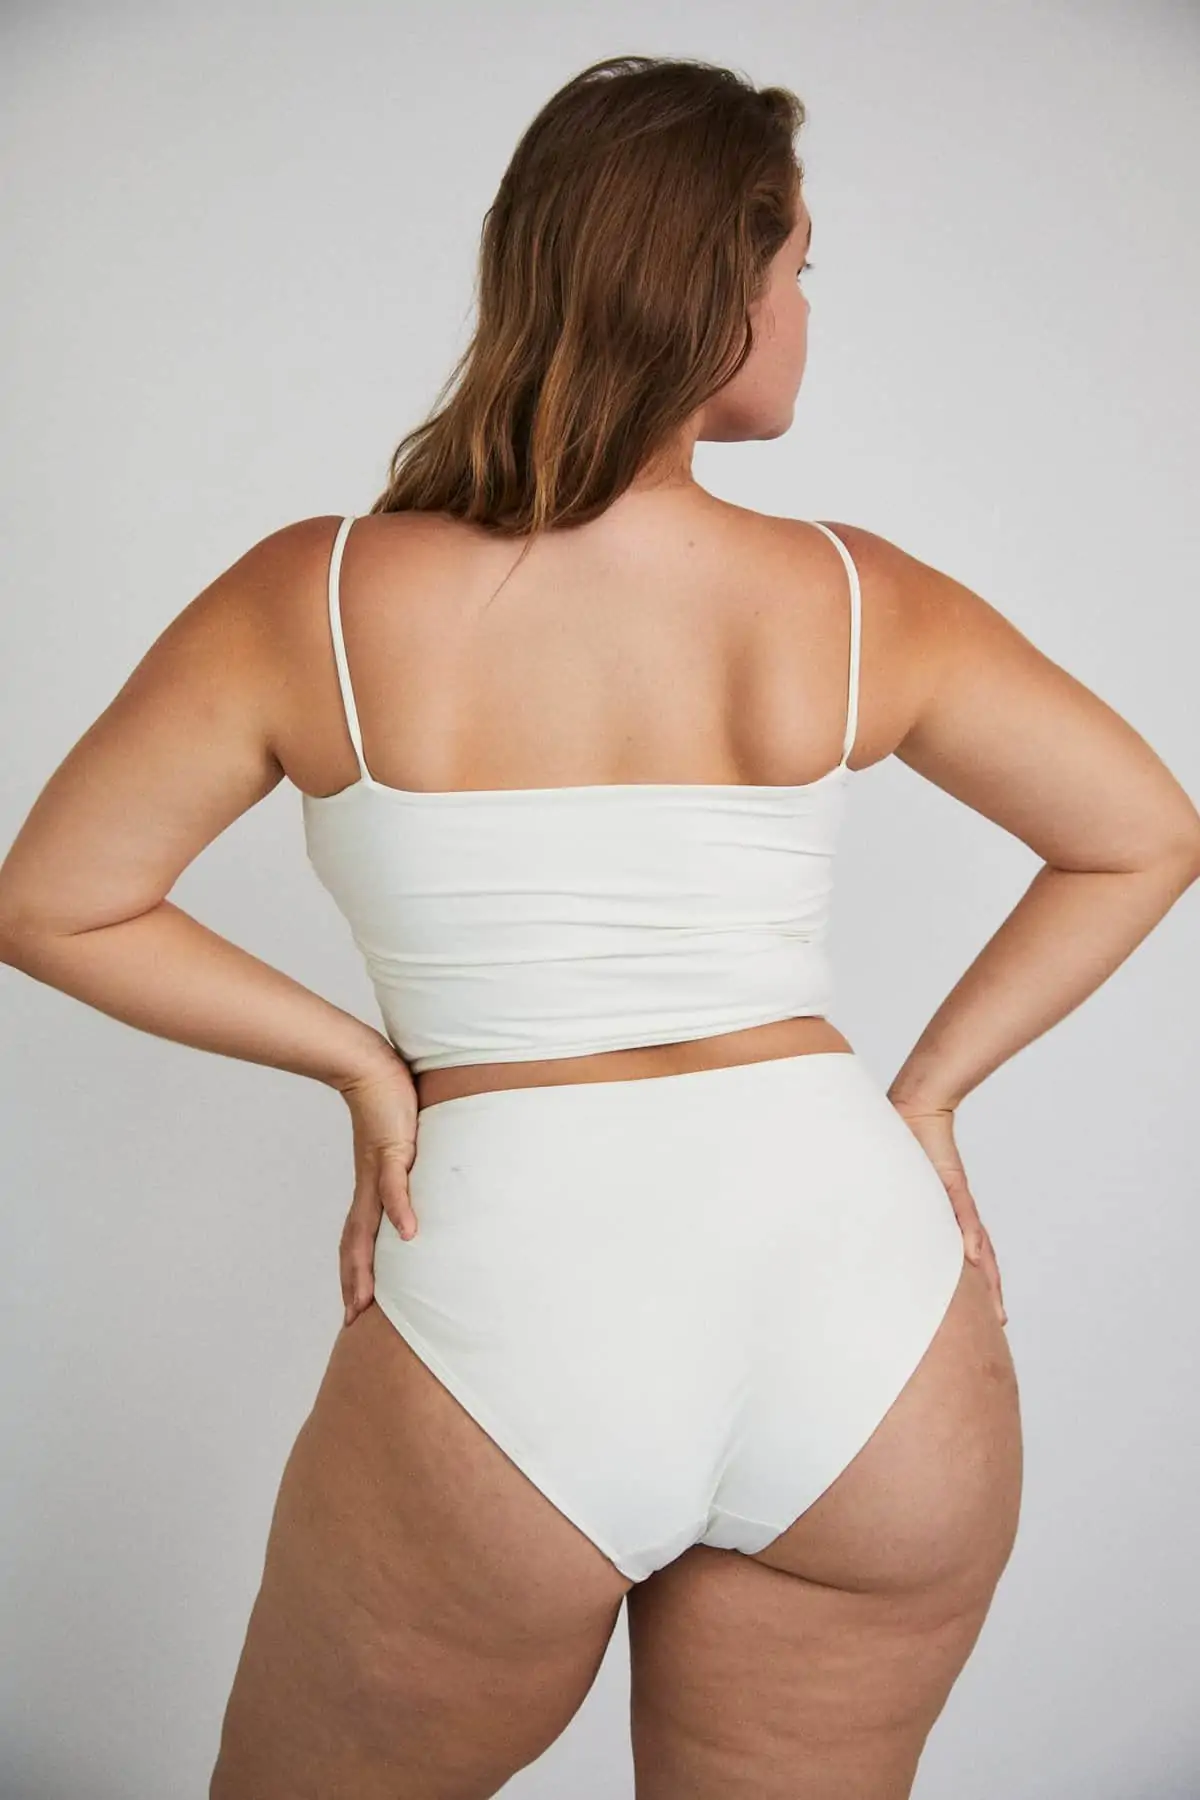 Quel est le maillot de bain idéal pour les hanches larges ?